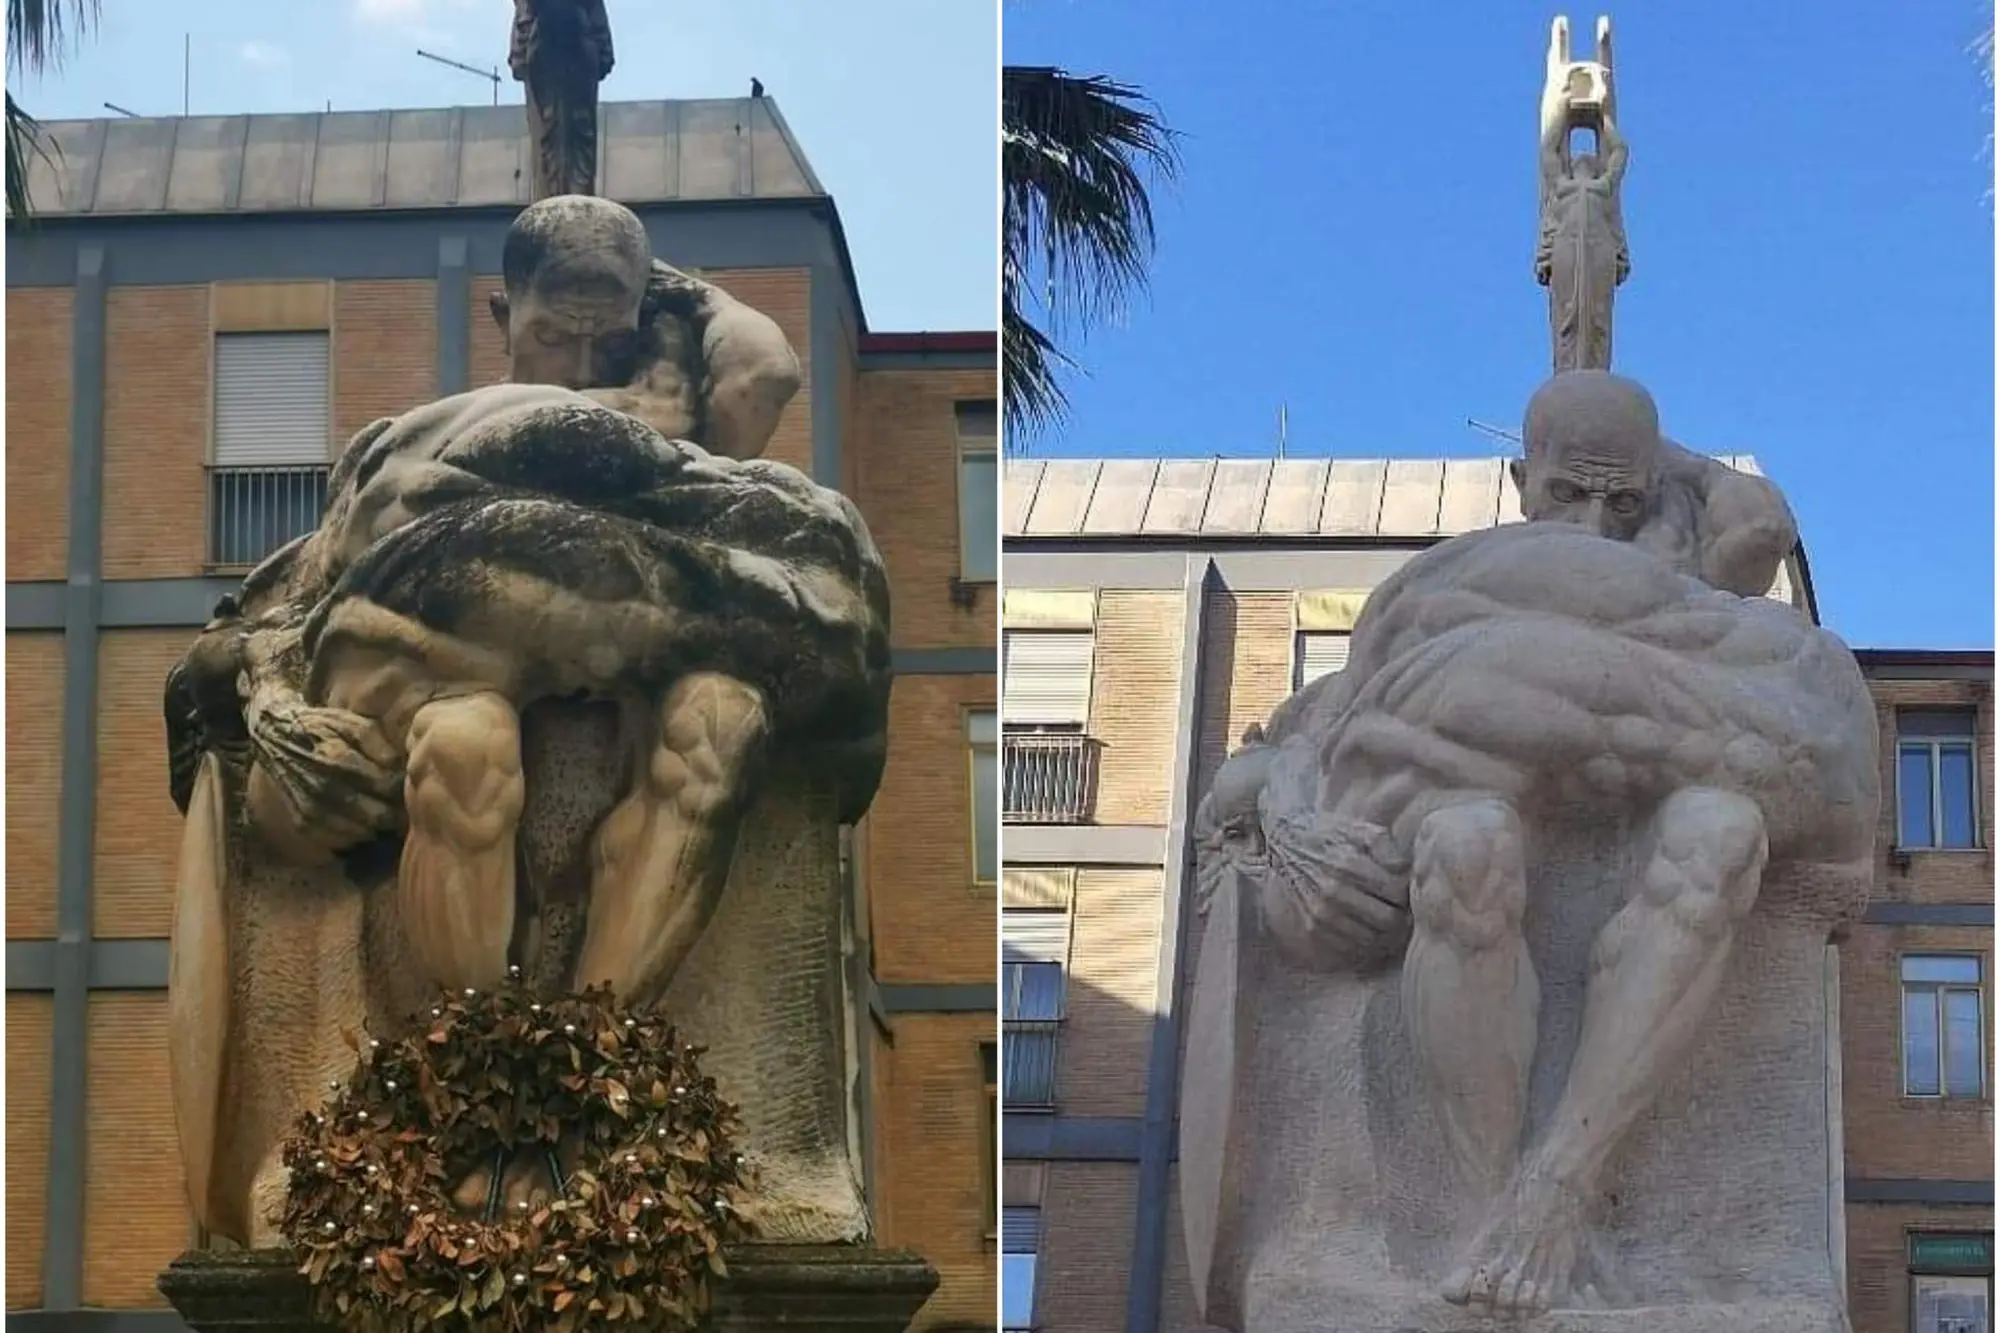 A sinistra, l'opera di Francesco Ciusa prima del restauro. A sinistra, dopo il restauro